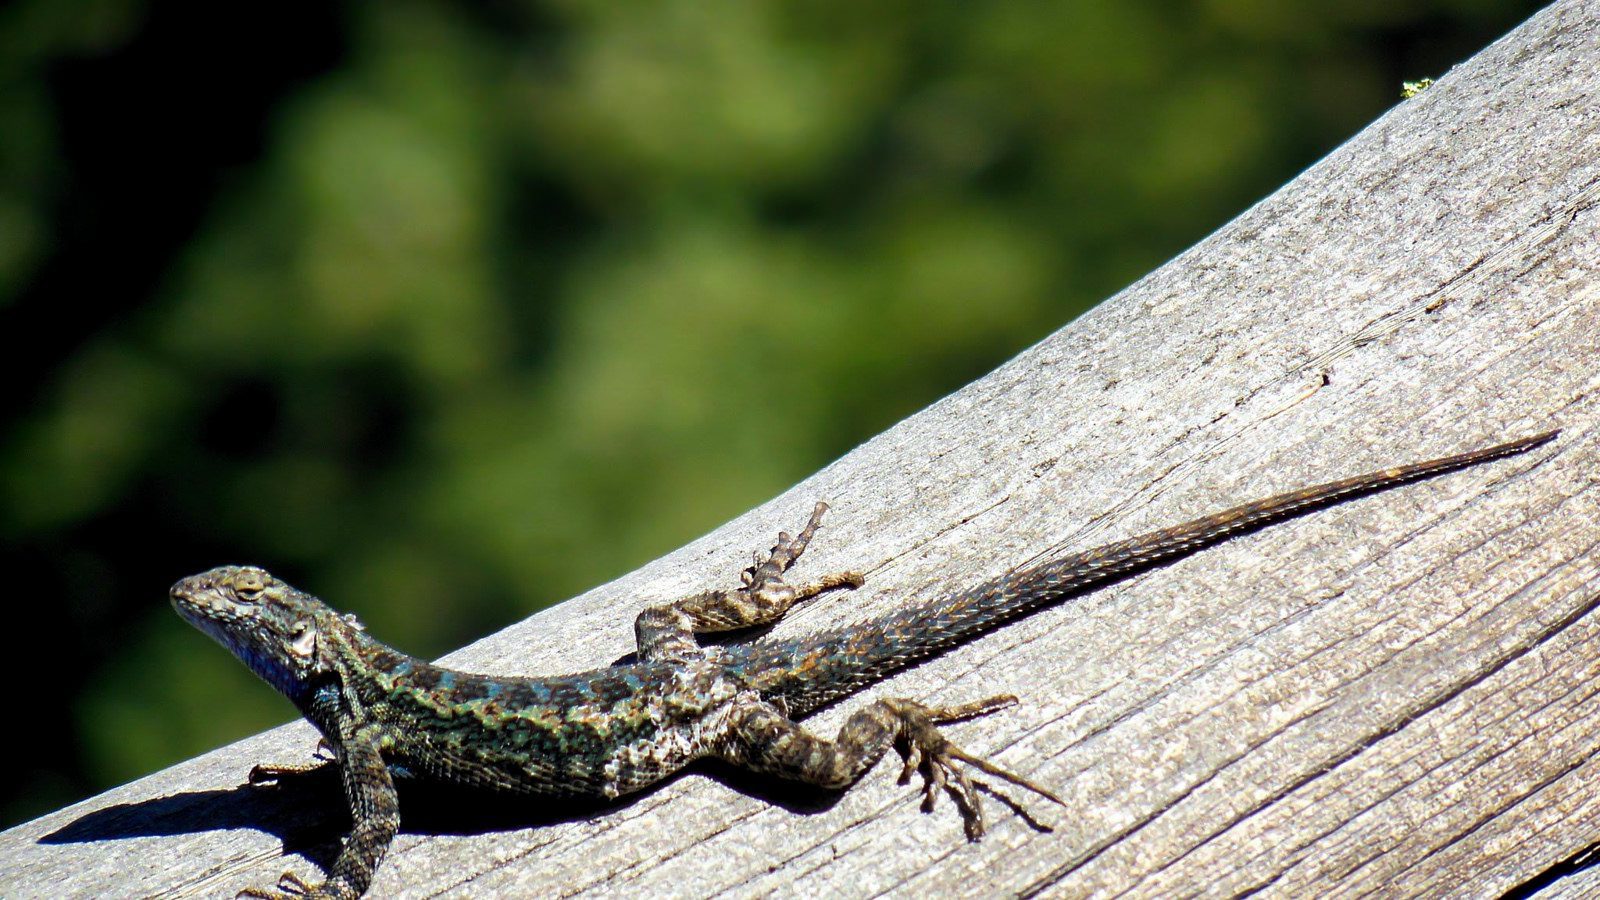 Lizards - Facts, Diet & Habitat Information